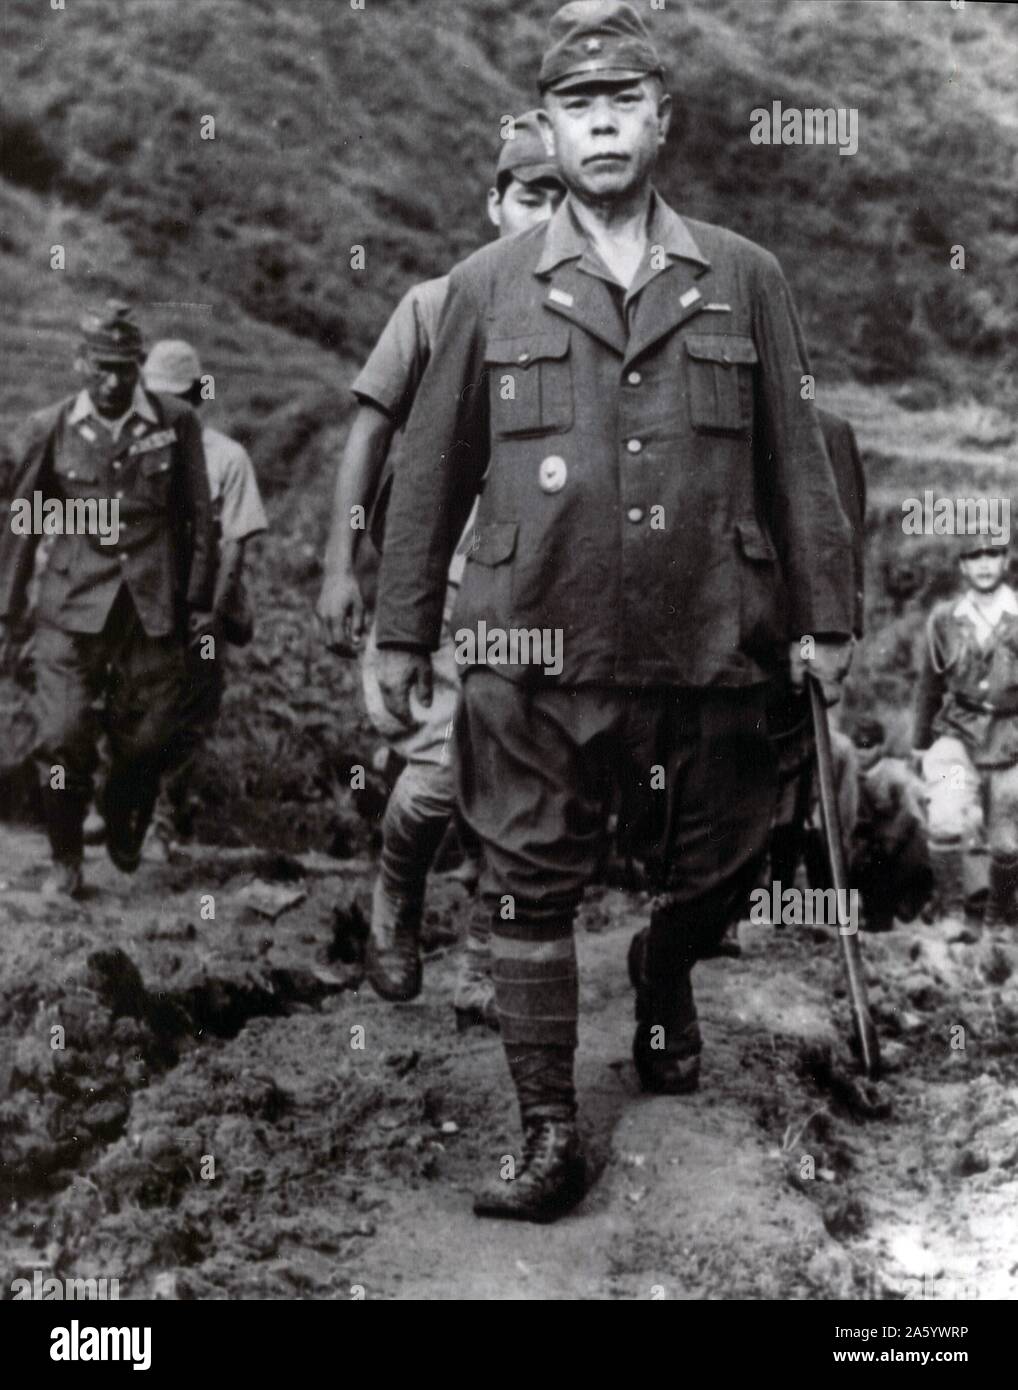 Photographie du Général Tomoyuki Yamashita surrending (1885-1946). Un général de l'Armée impériale japonaise durant la Seconde Guerre mondiale. Il a été exécuté par pendaison après avoir été reconnu coupable de crimes de guerre par un procès à Manille. Datée 1946 Banque D'Images